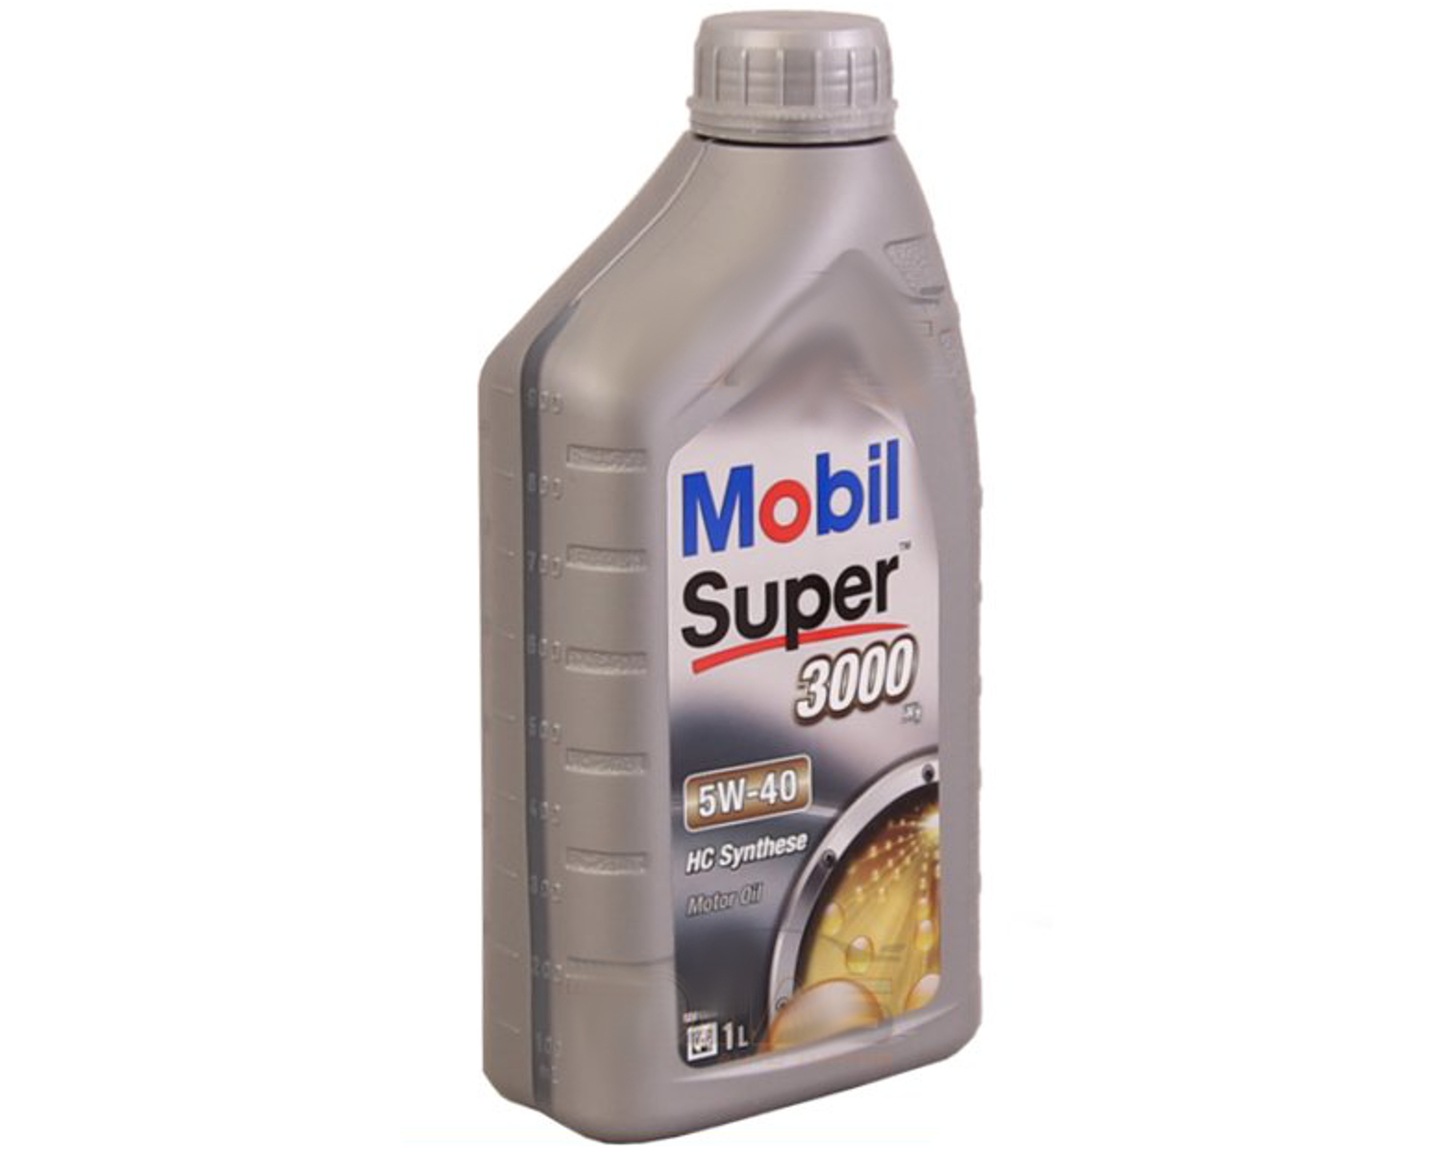 Mobil  Super 3000 X1  5W-40  масло моторное синтетическое  (1л)